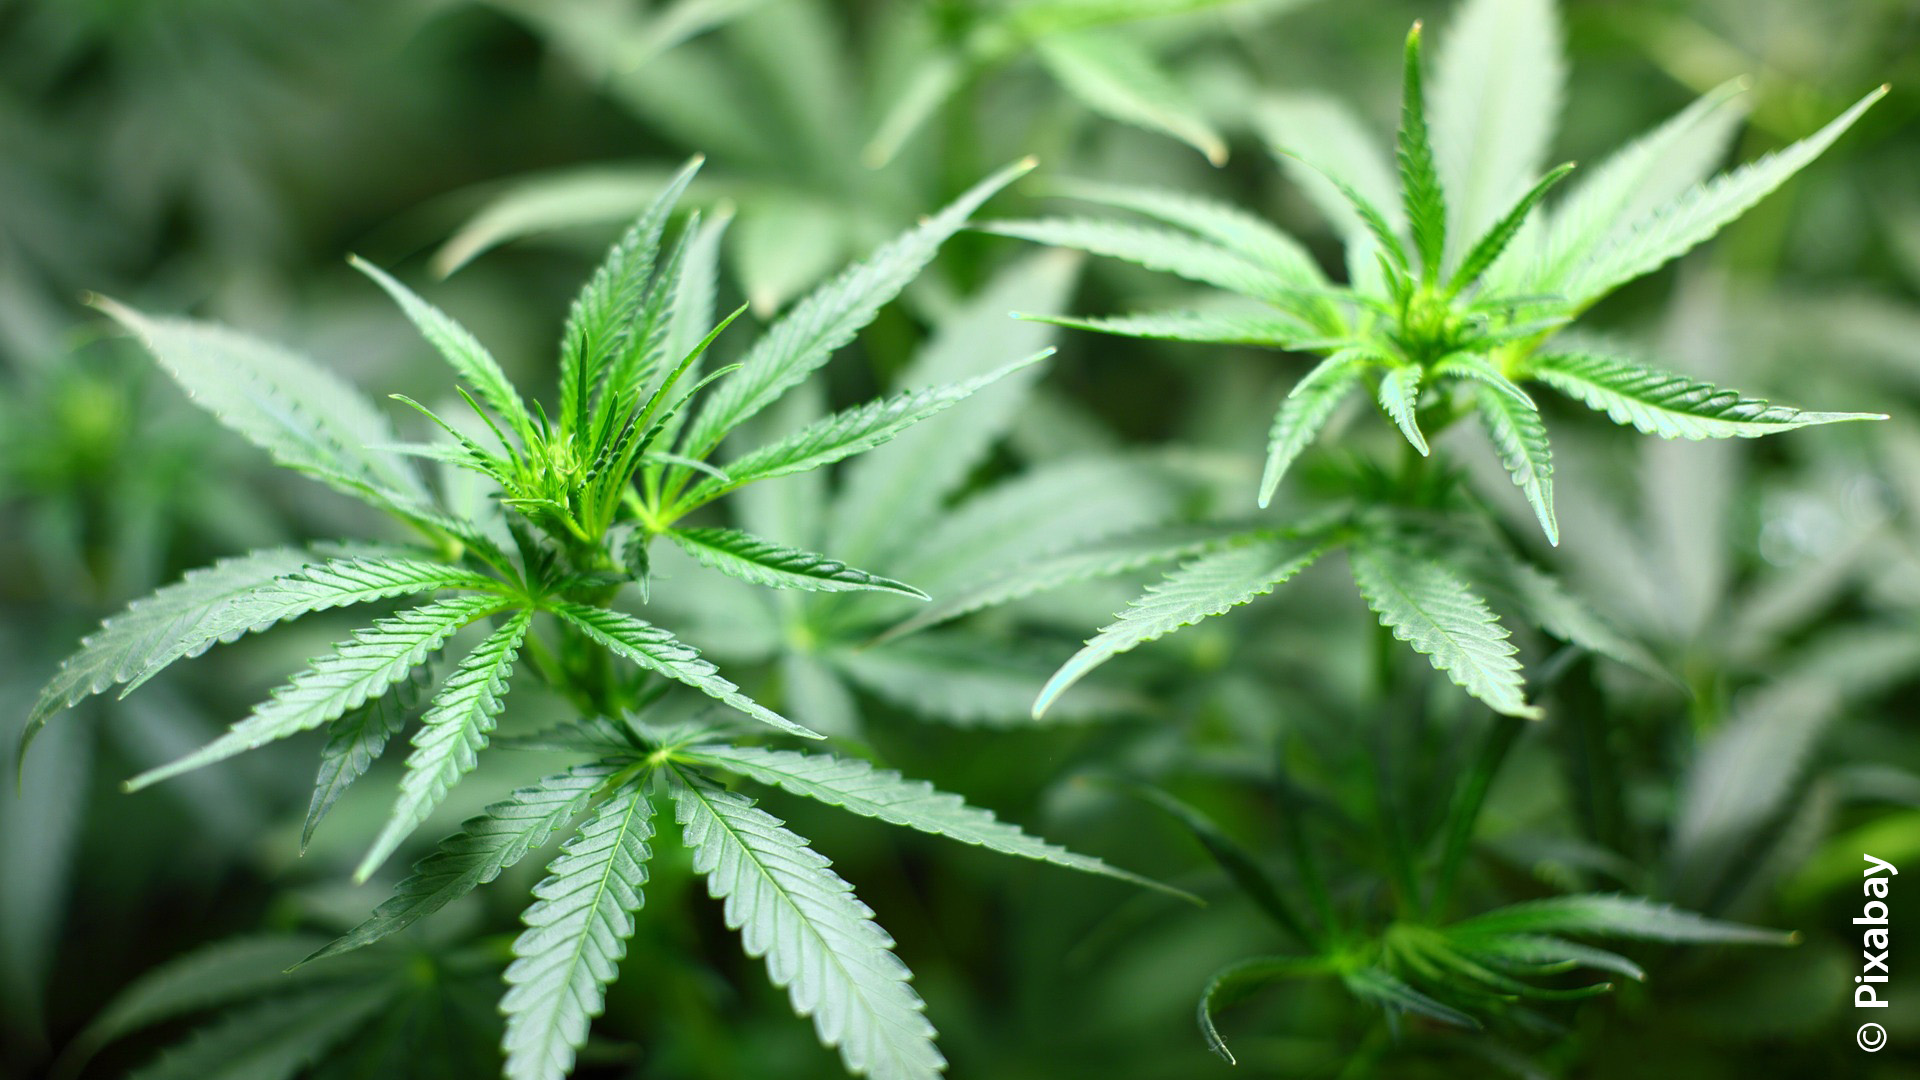 23kw45_Cannabispflanze_Pixabay